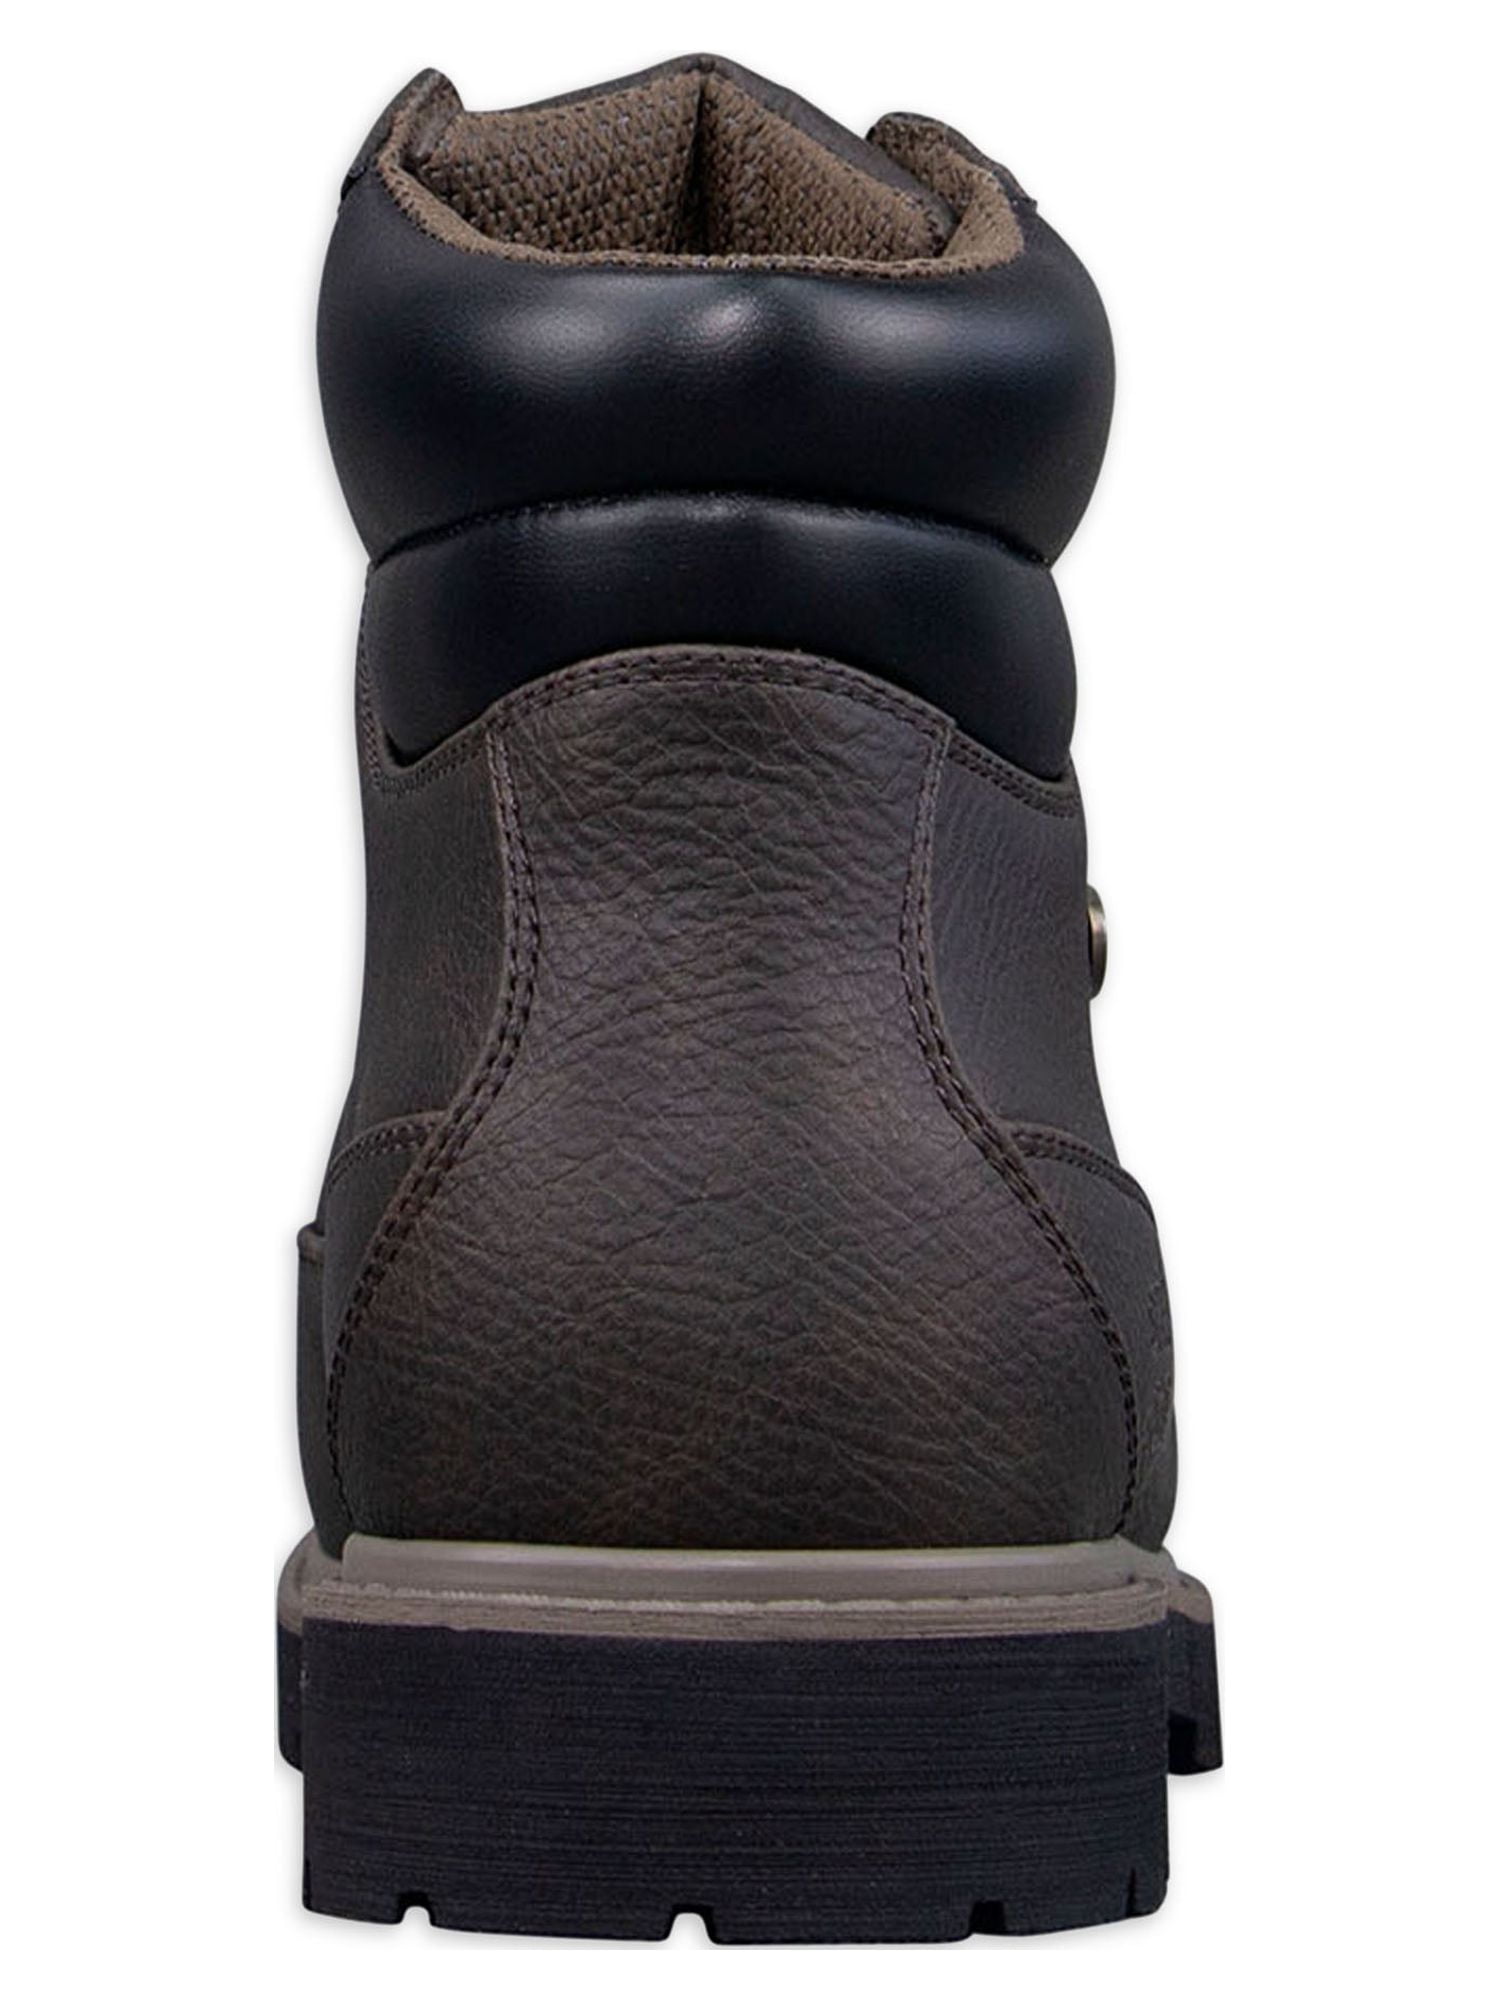 Cinturón Louis Vuitton Negro - TeCalzoShoes